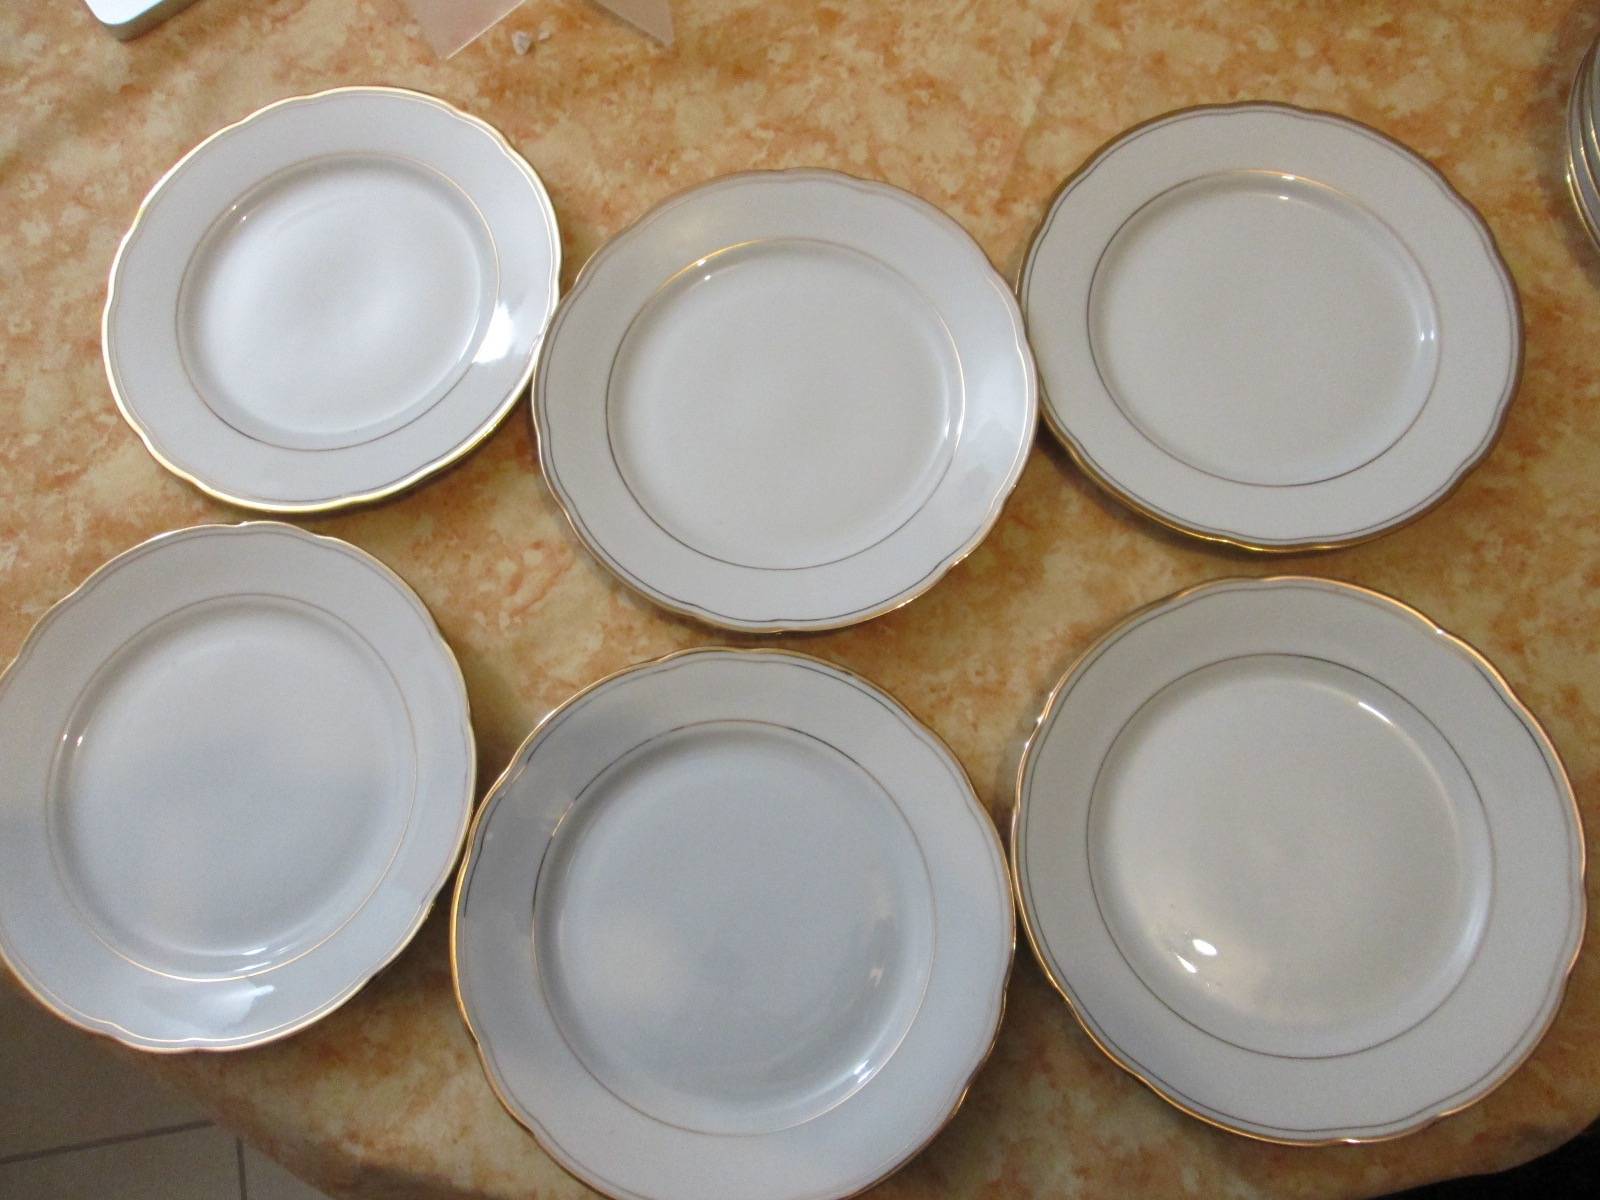 Assiette en porcelaine avec liseré doré (lot de 6) (assiettes